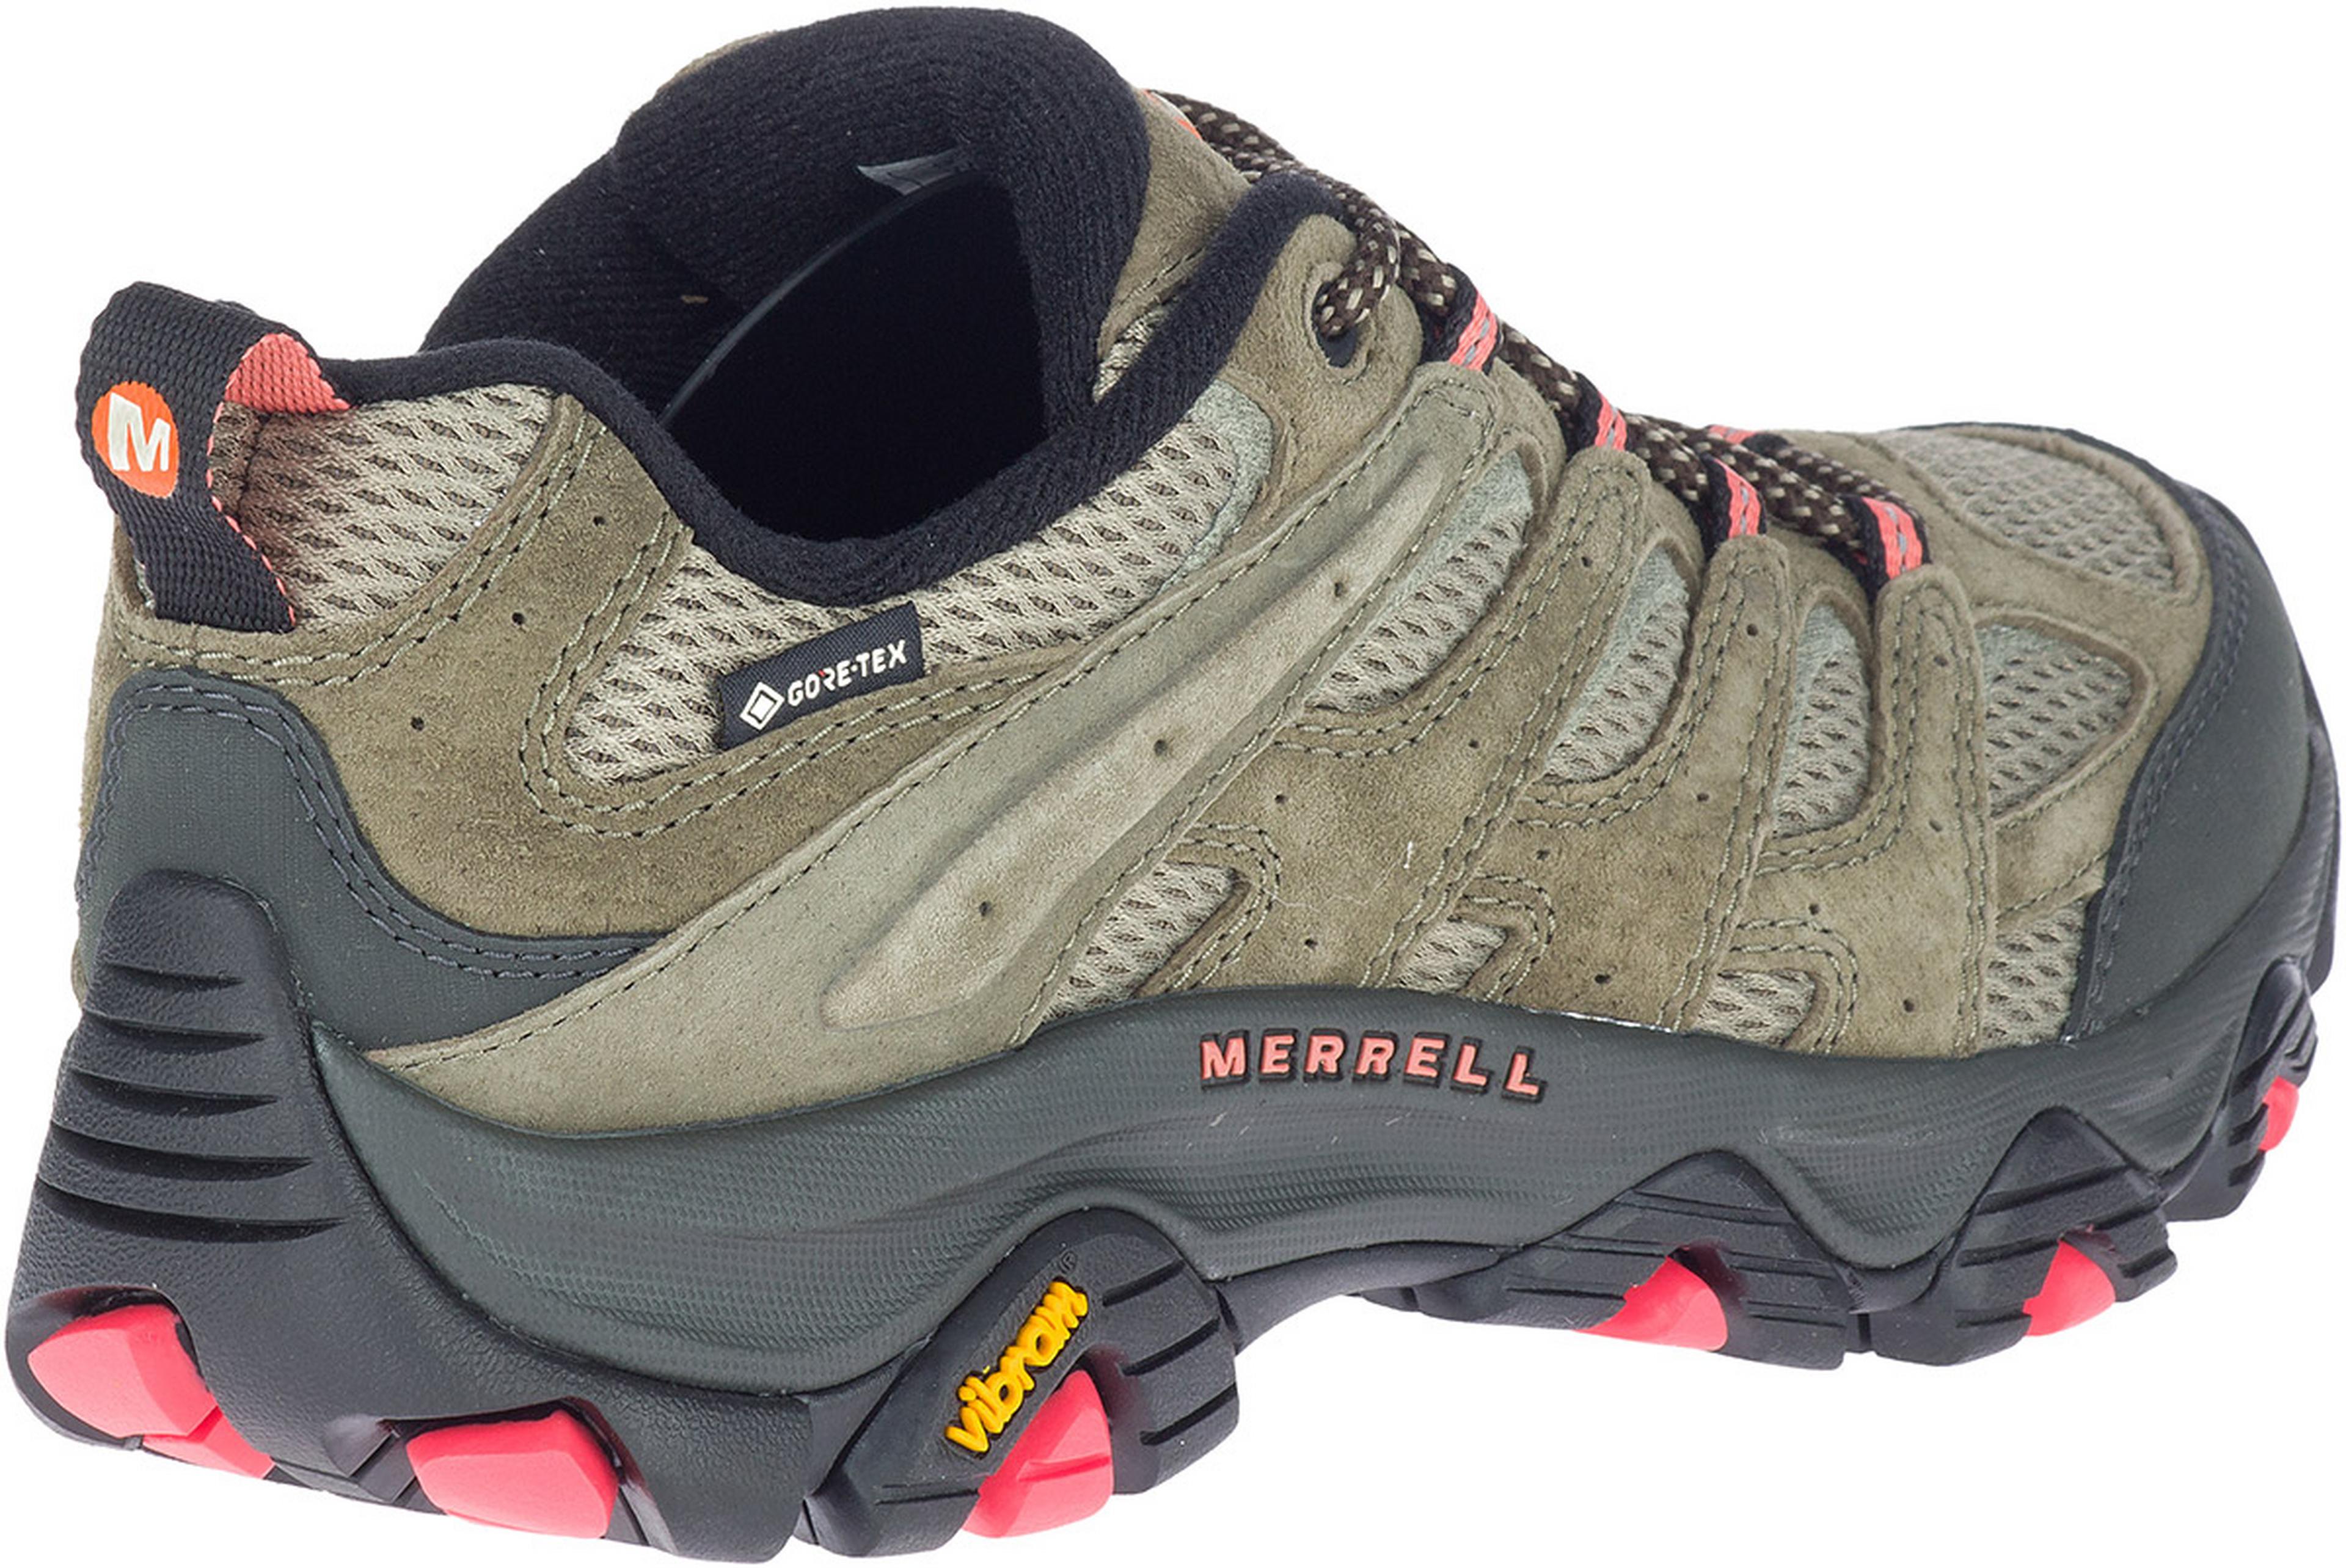 Merrell Moab 3 GTX Gore-Tex Vibram Khaki Women Outdoors Hiking Shoes J036326